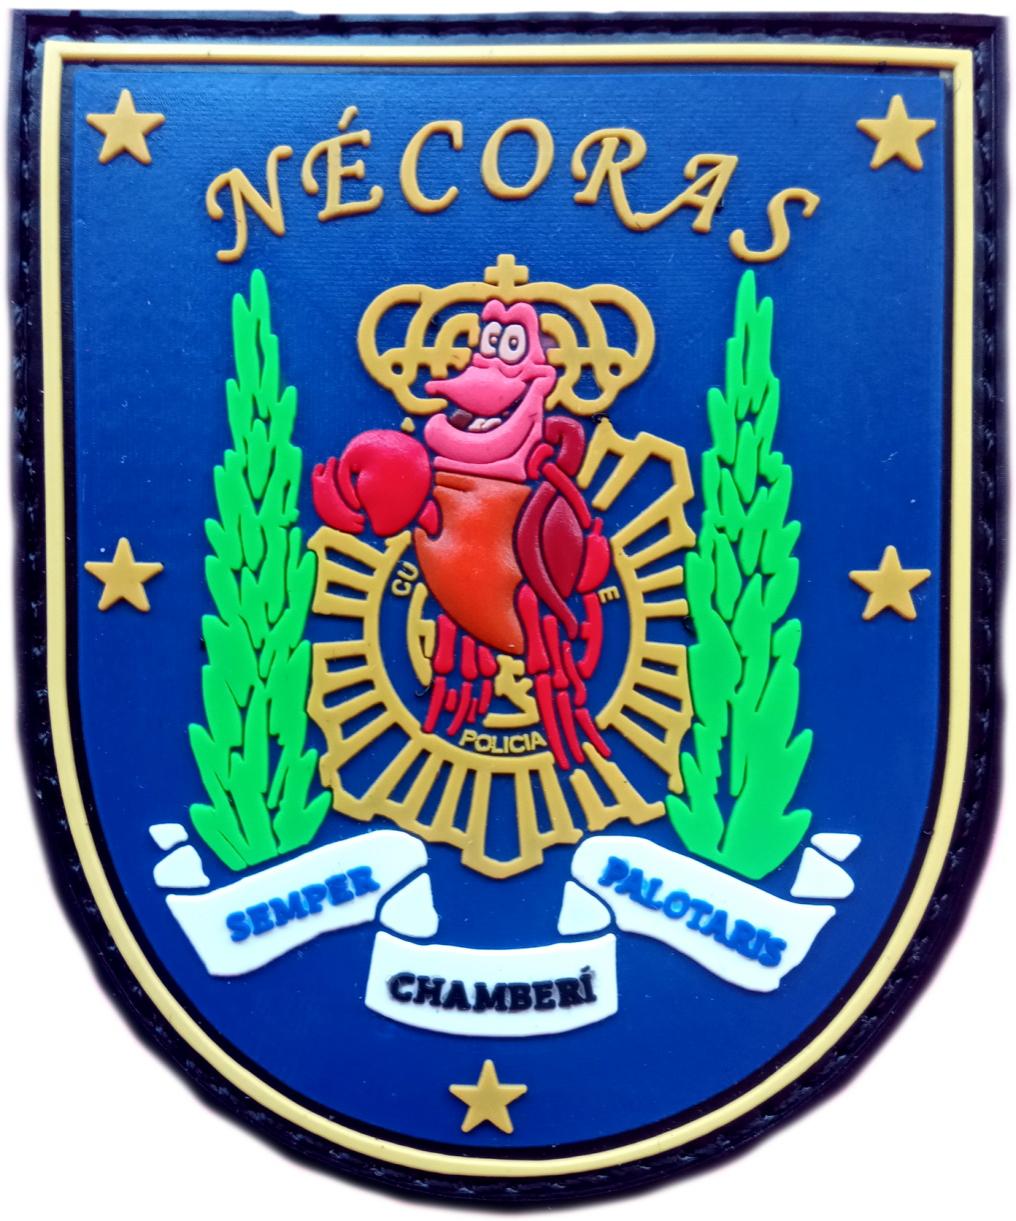 Policía Nacional CNP Comisaría Chamberí Nécoras Semper Palotaris parche insignia emblema distintivo